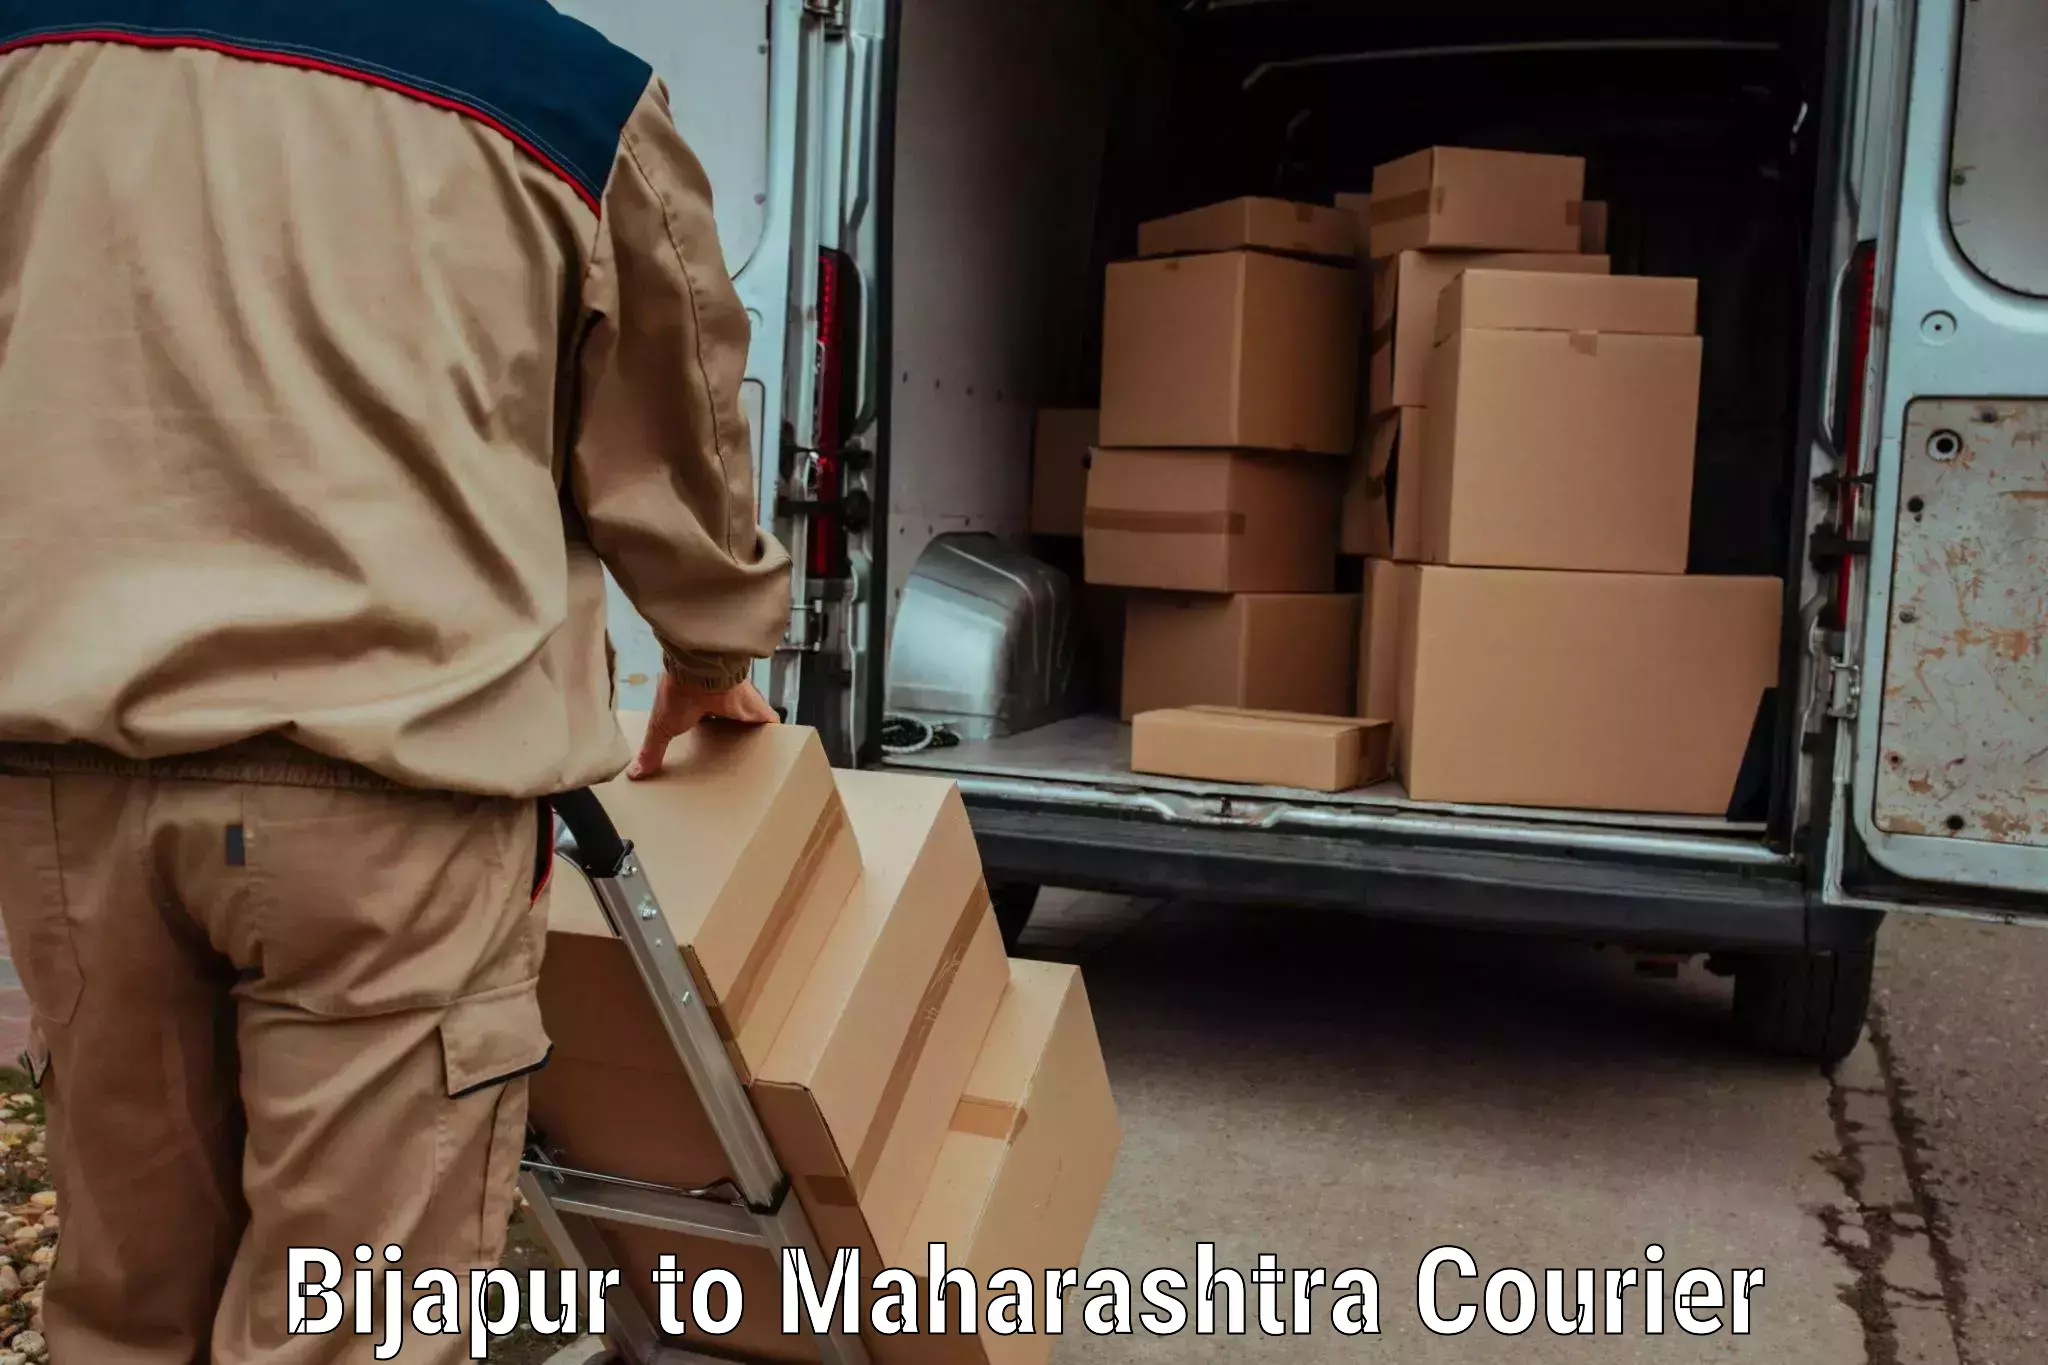 Pharmaceutical courier Bijapur to Nashik